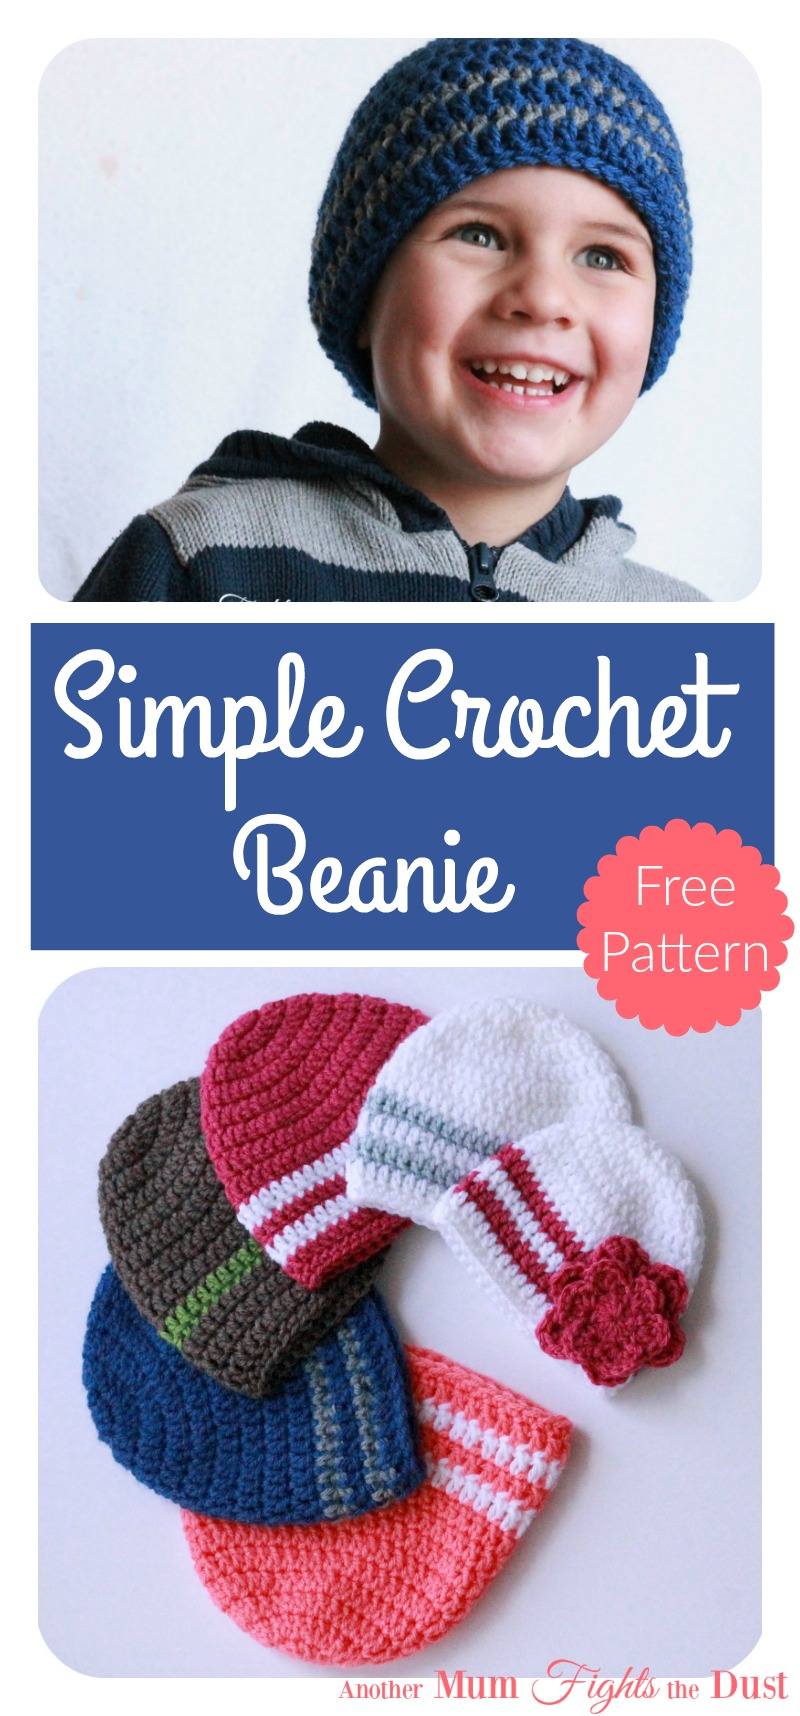 Single Crochet Beanie Pattern Free Simple Crochet Beanie Free Pattern Another Mum Fights The Dust